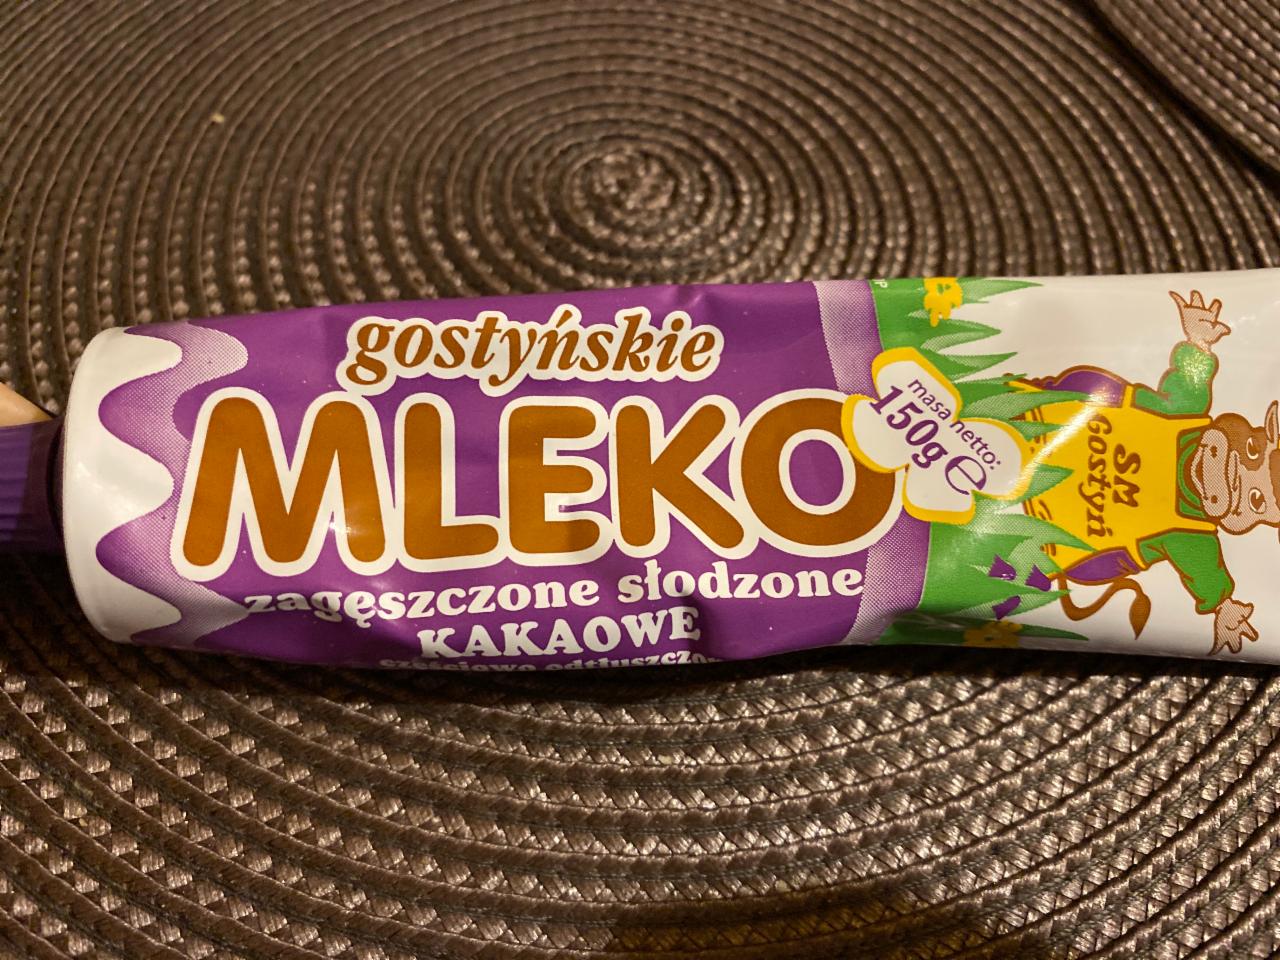 Фото - Mleko zagęszczone słodzone kakaowe SM Gostyń